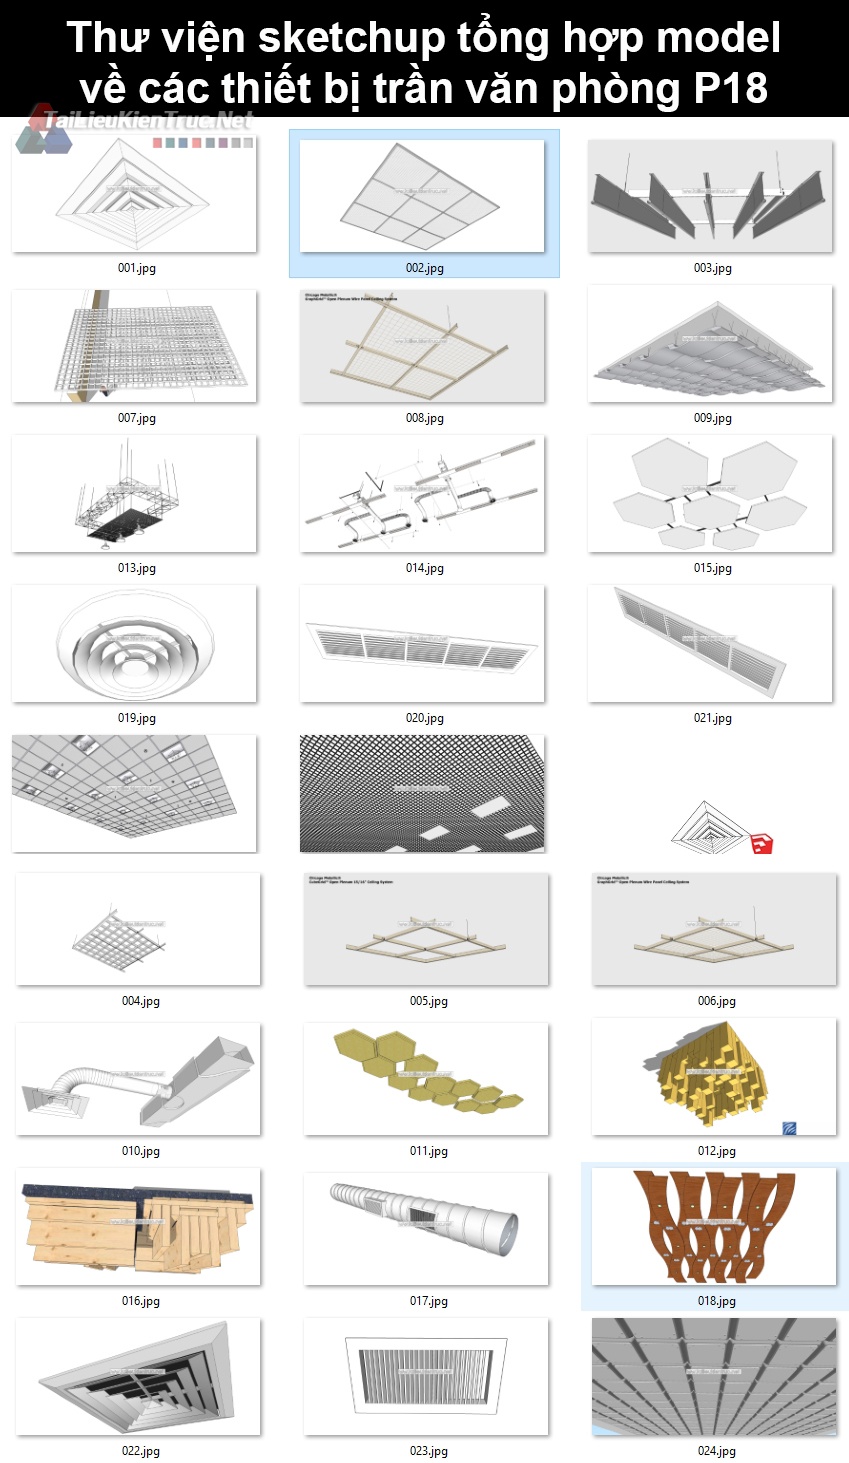 Thư viện sketchup tổng hợp model về các thiết bị trần văn phòng P18